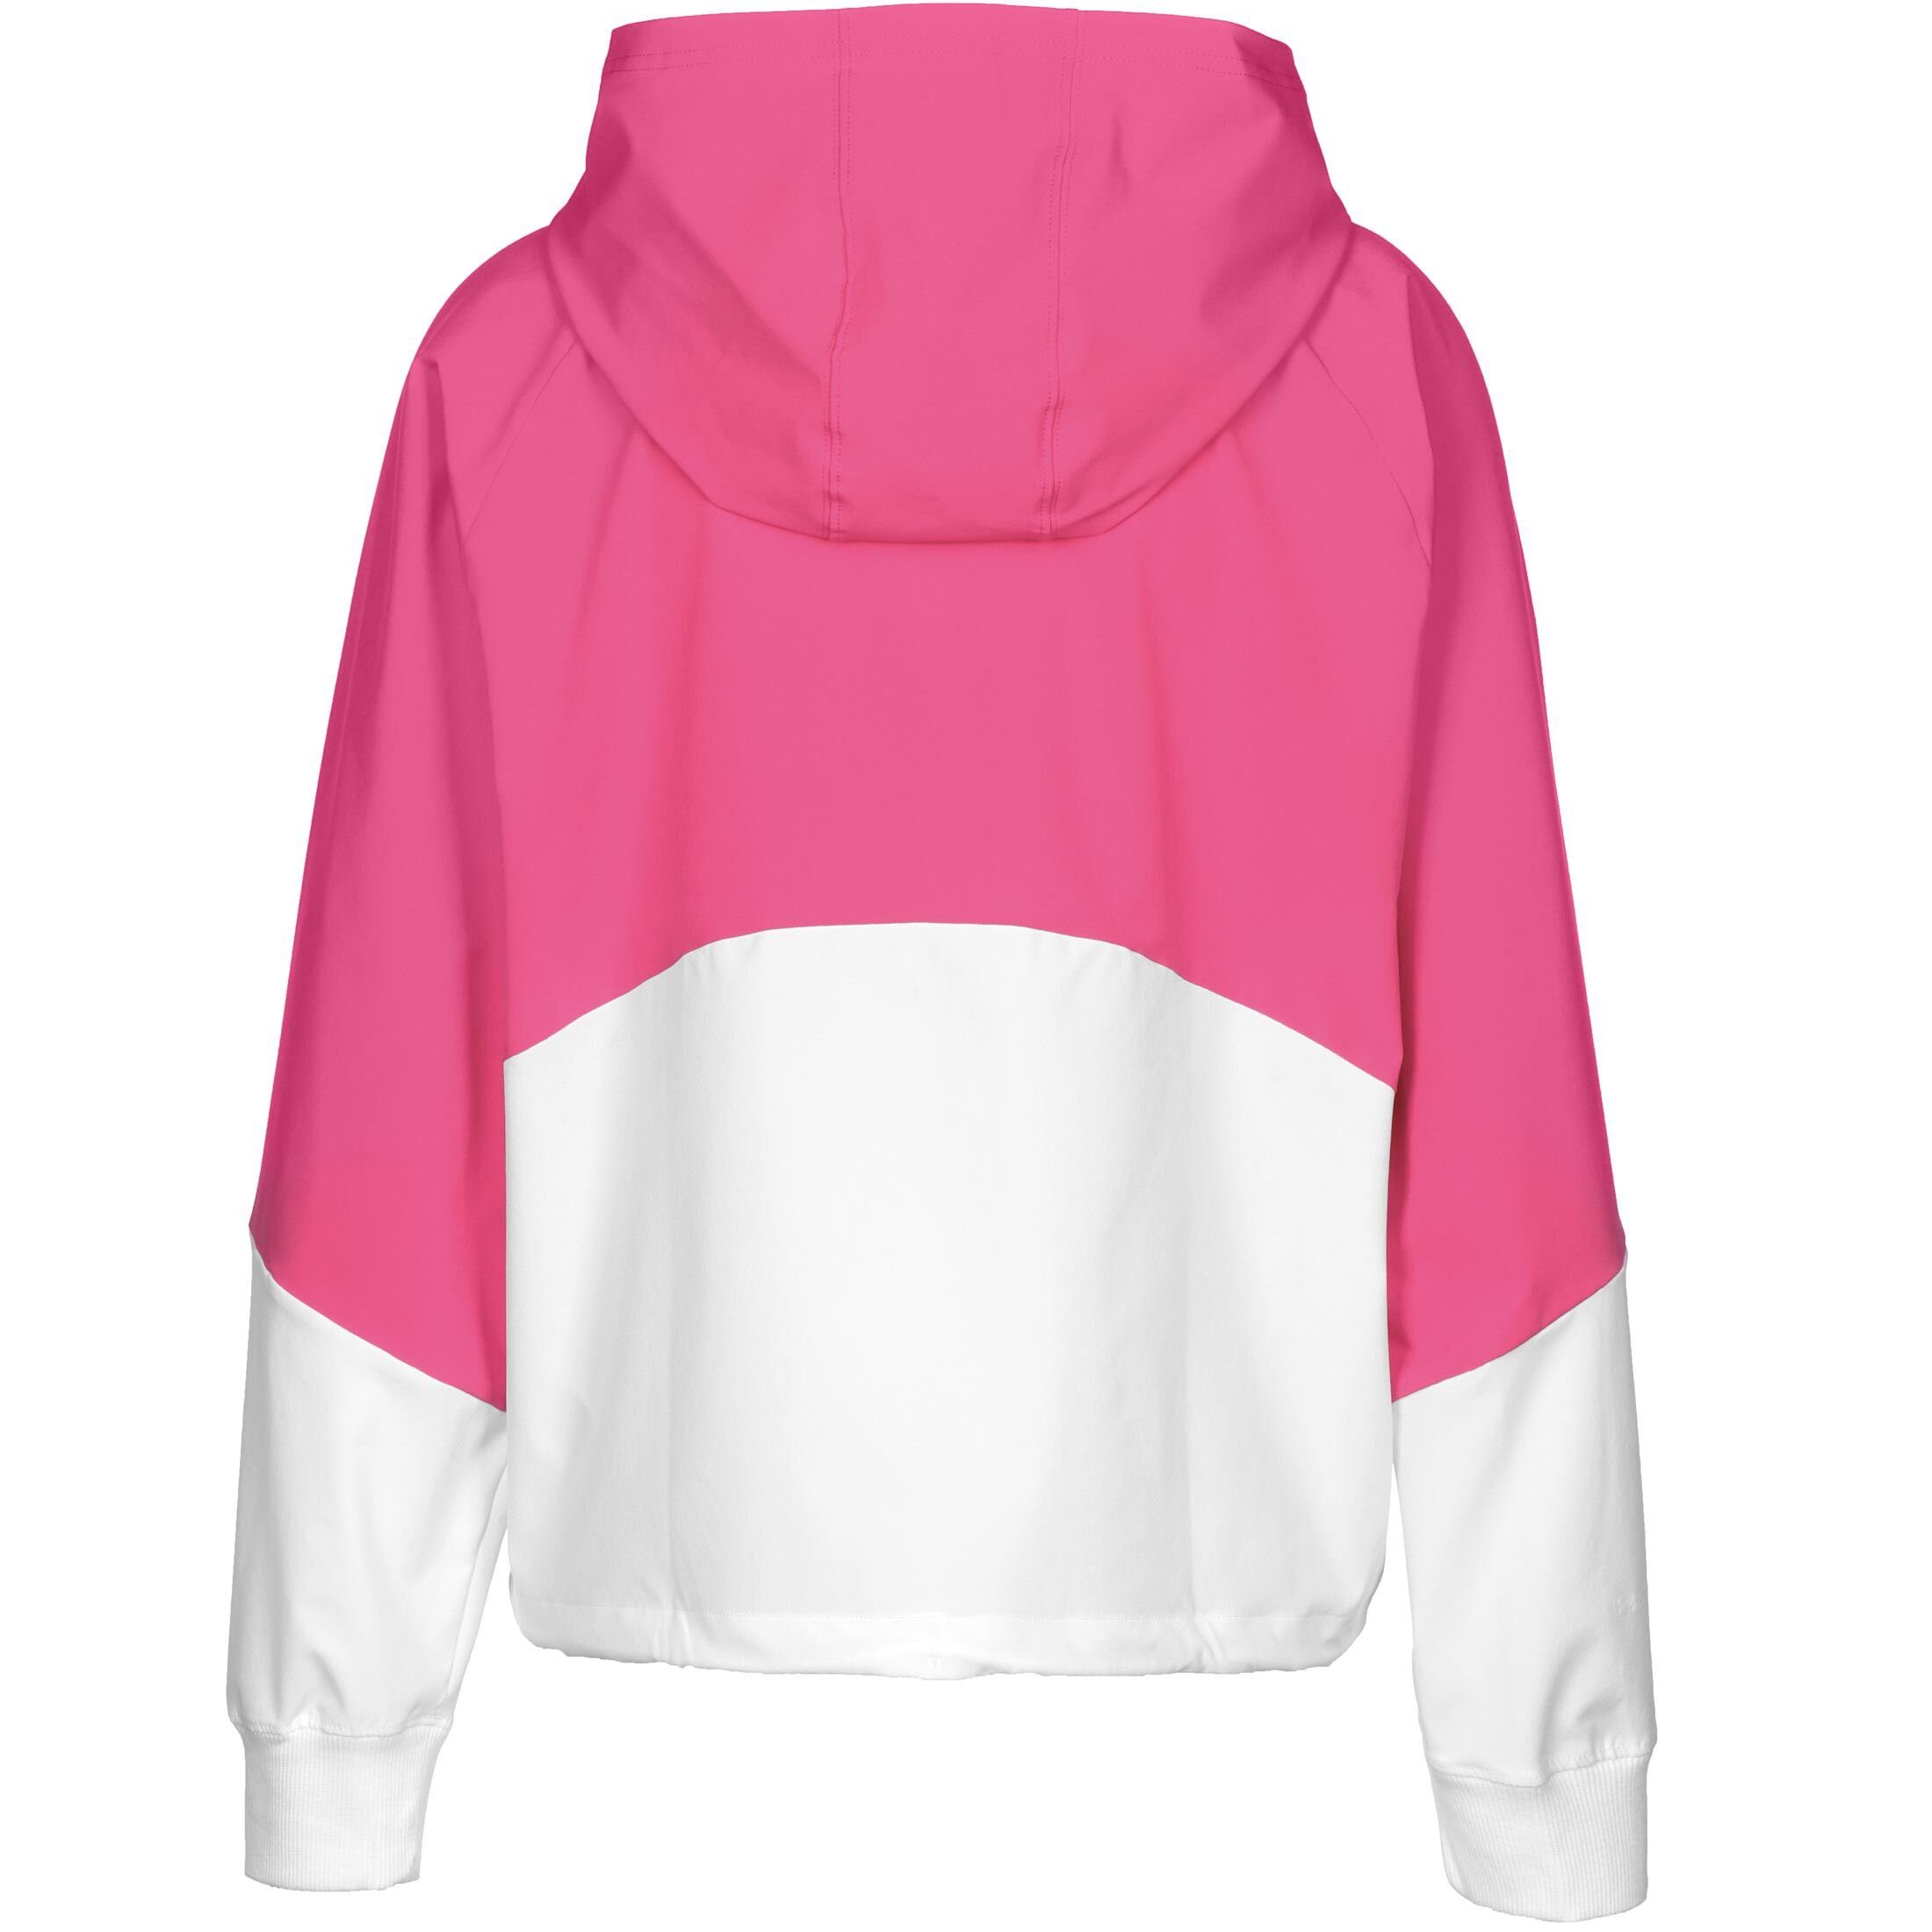 Under Armour® Trainingsjacke Woven pink Jacke Damen weiß 